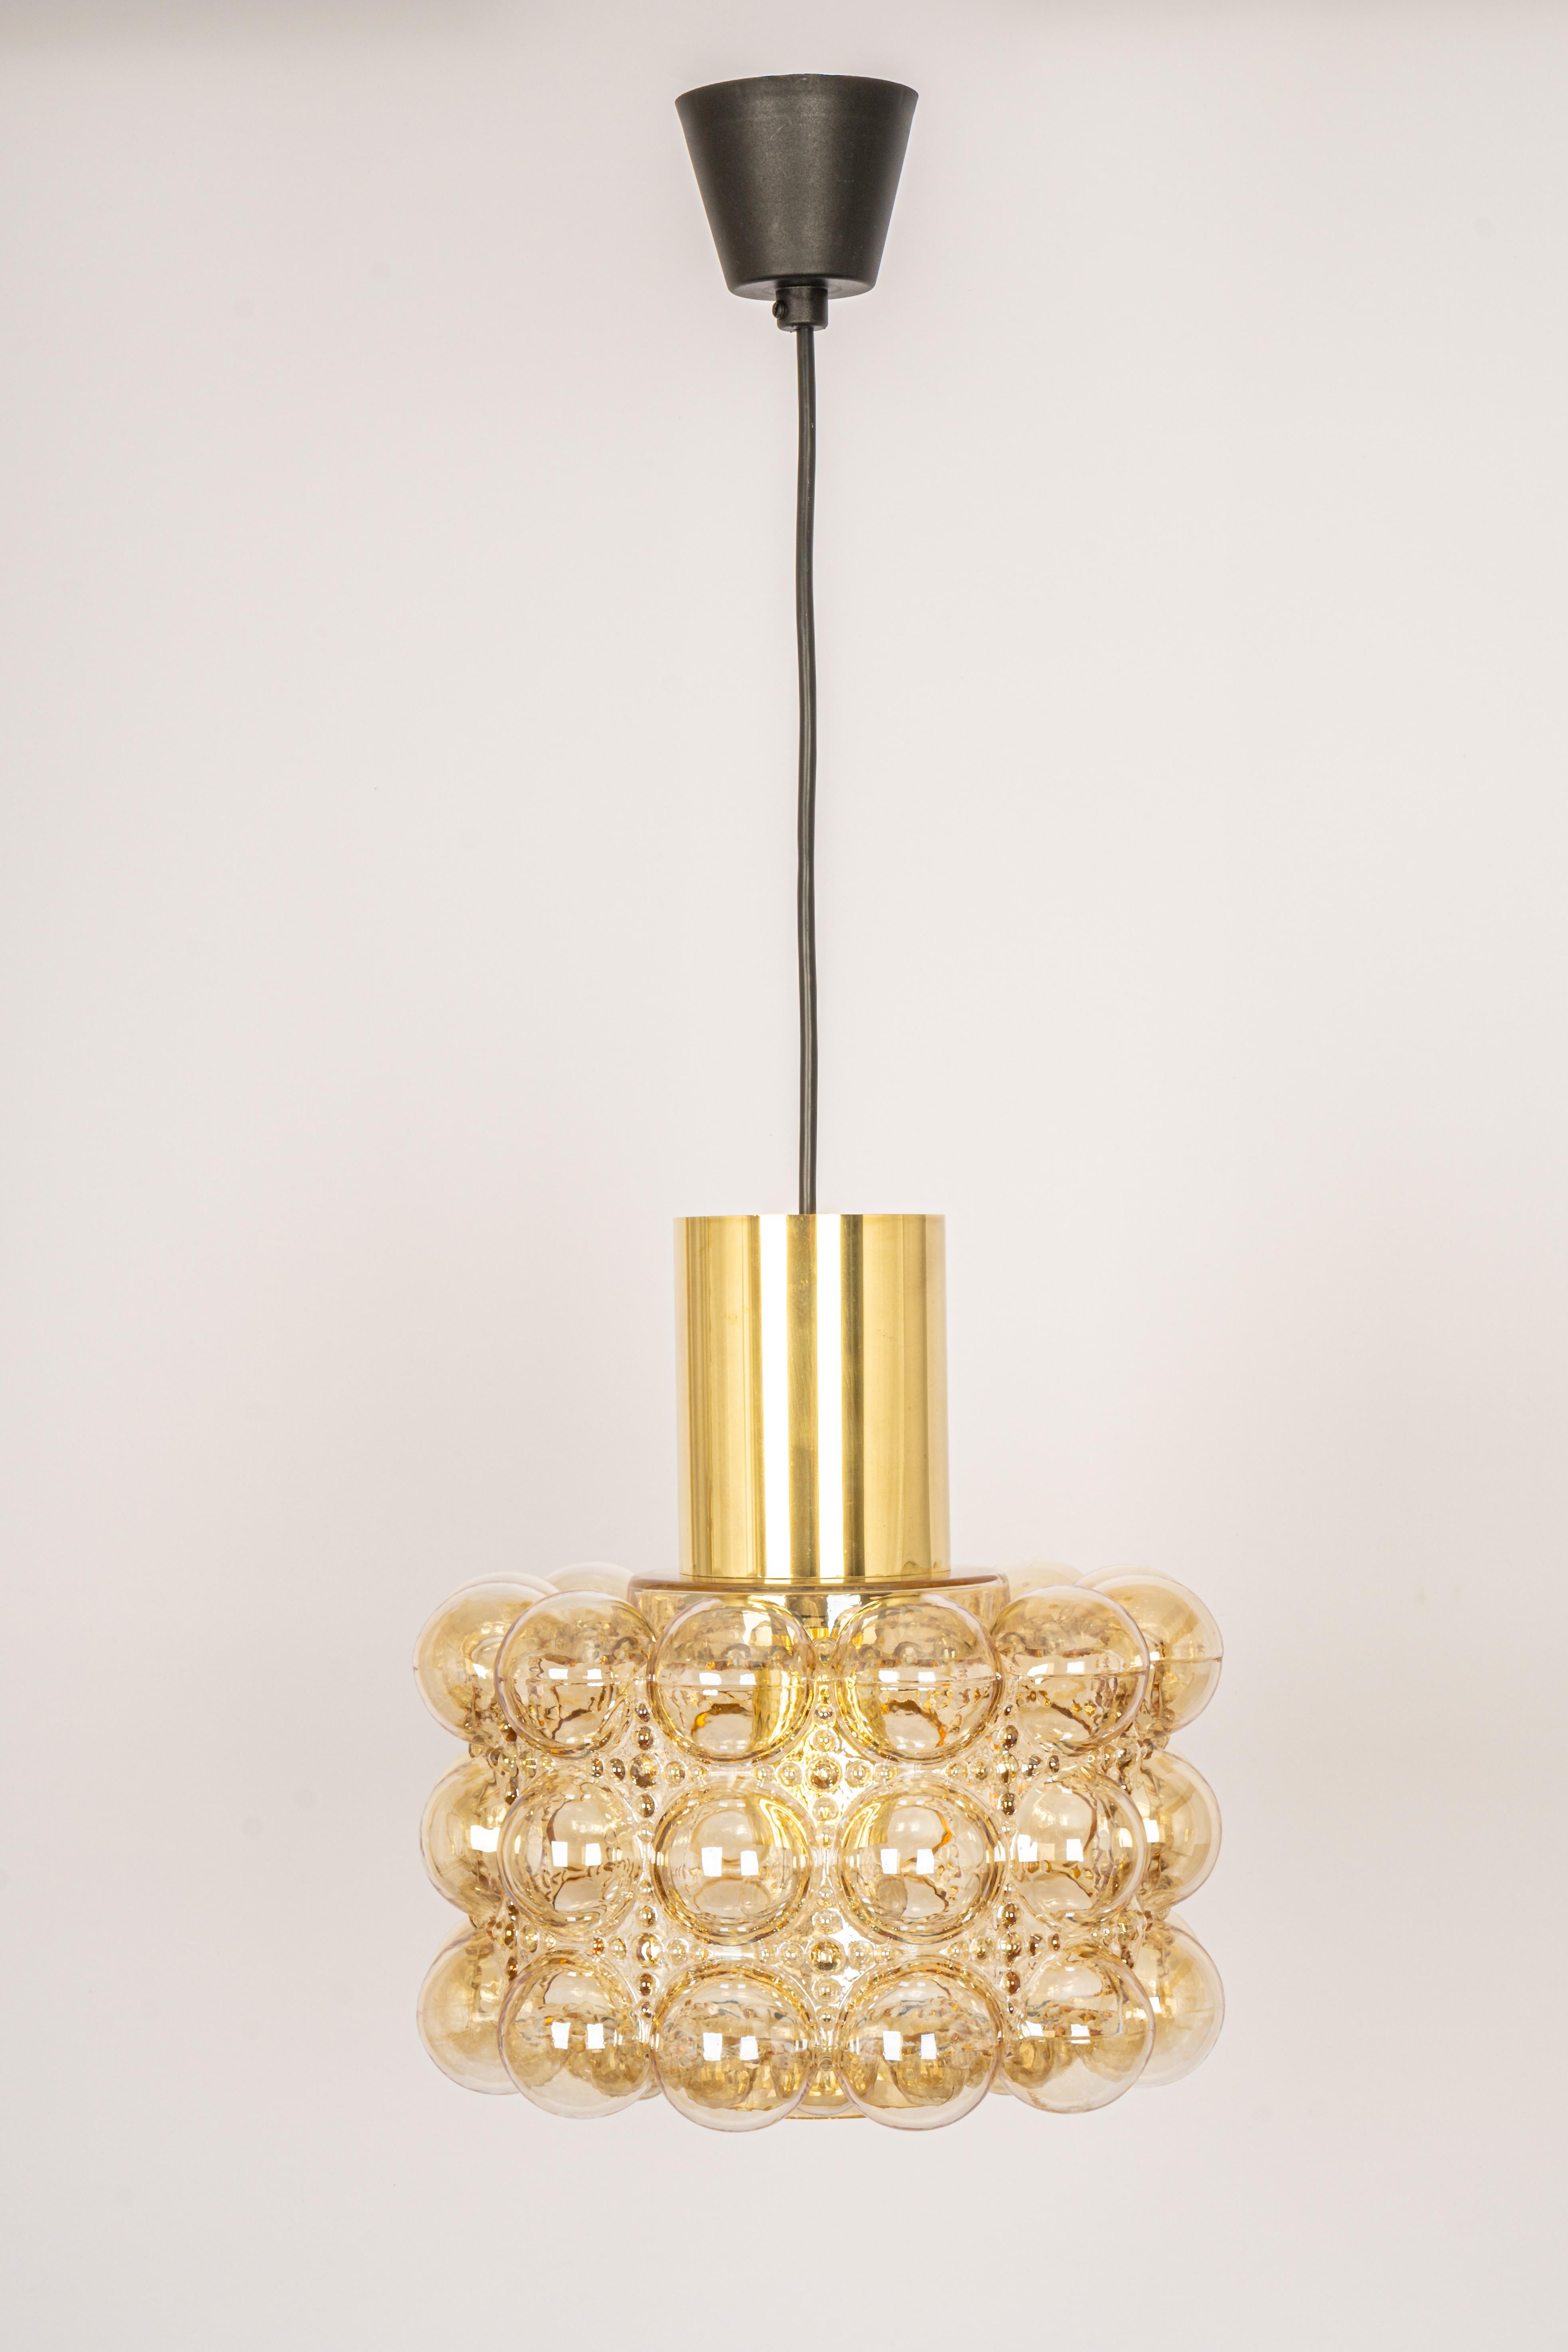 Große runde, leicht rauchfarbene Blasenglas-Hängeleuchte, entworfen von Helena Tynell für Limburg, hergestellt in Deutschland, ca. 1970er Jahre

Fassungen: Es braucht 1 x E27 Standard-Glühbirne.
Glühbirnen sind nicht enthalten. Es ist möglich,